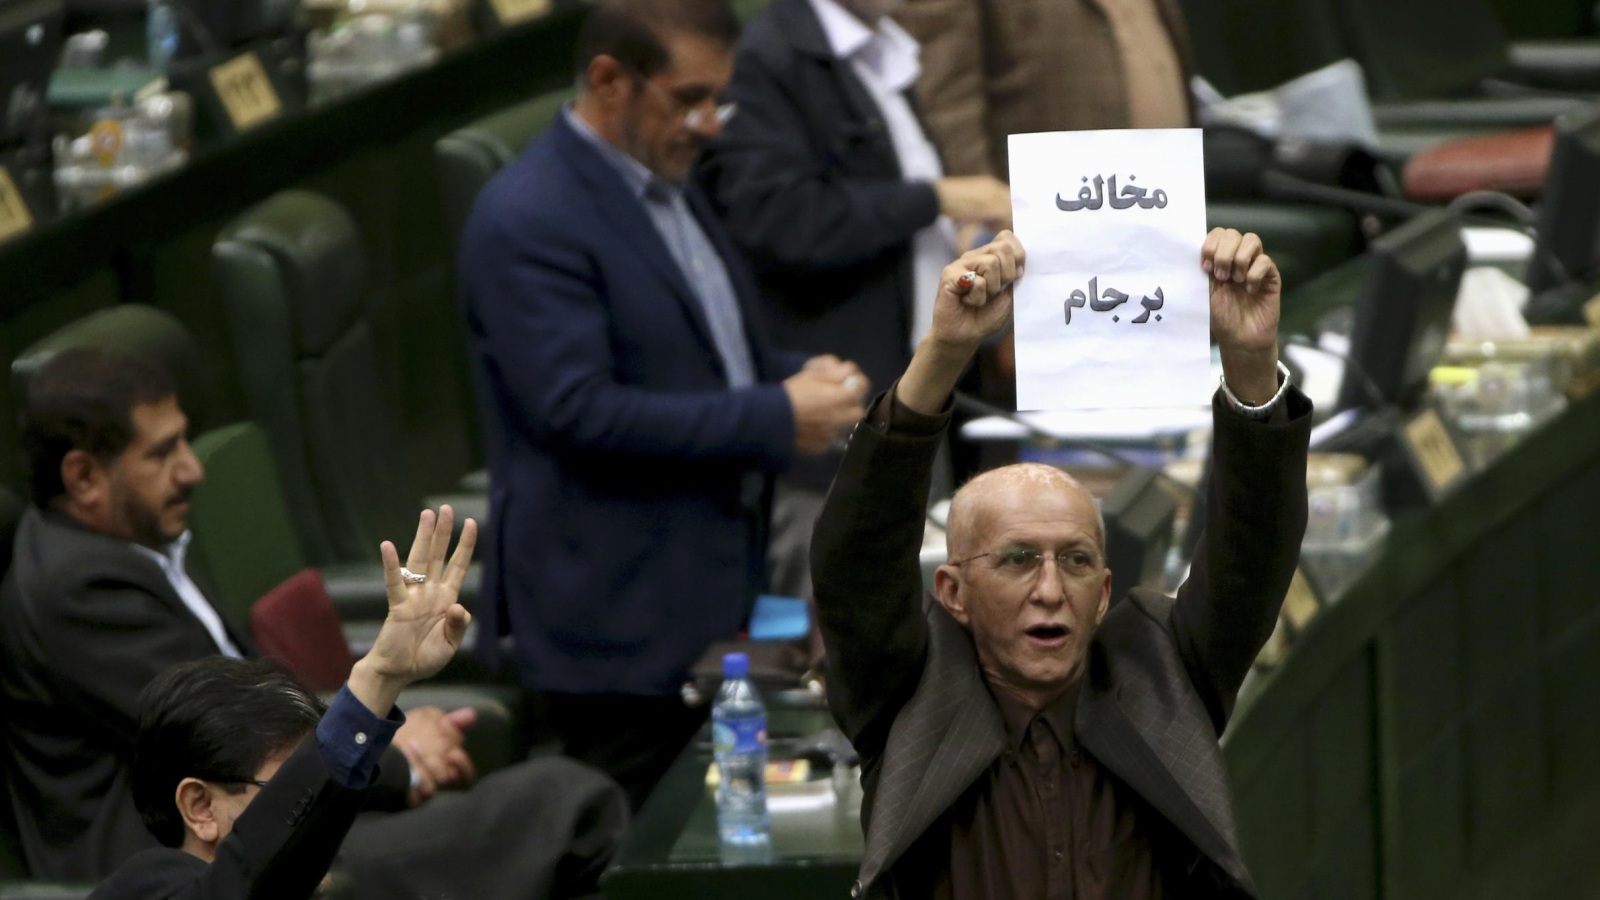 ‪برلماني إيراني يرفع ورقة للتعبير عن رفضه الاتفاق النووي مع القوى الكبرى‬ (أسوشيتد برس)